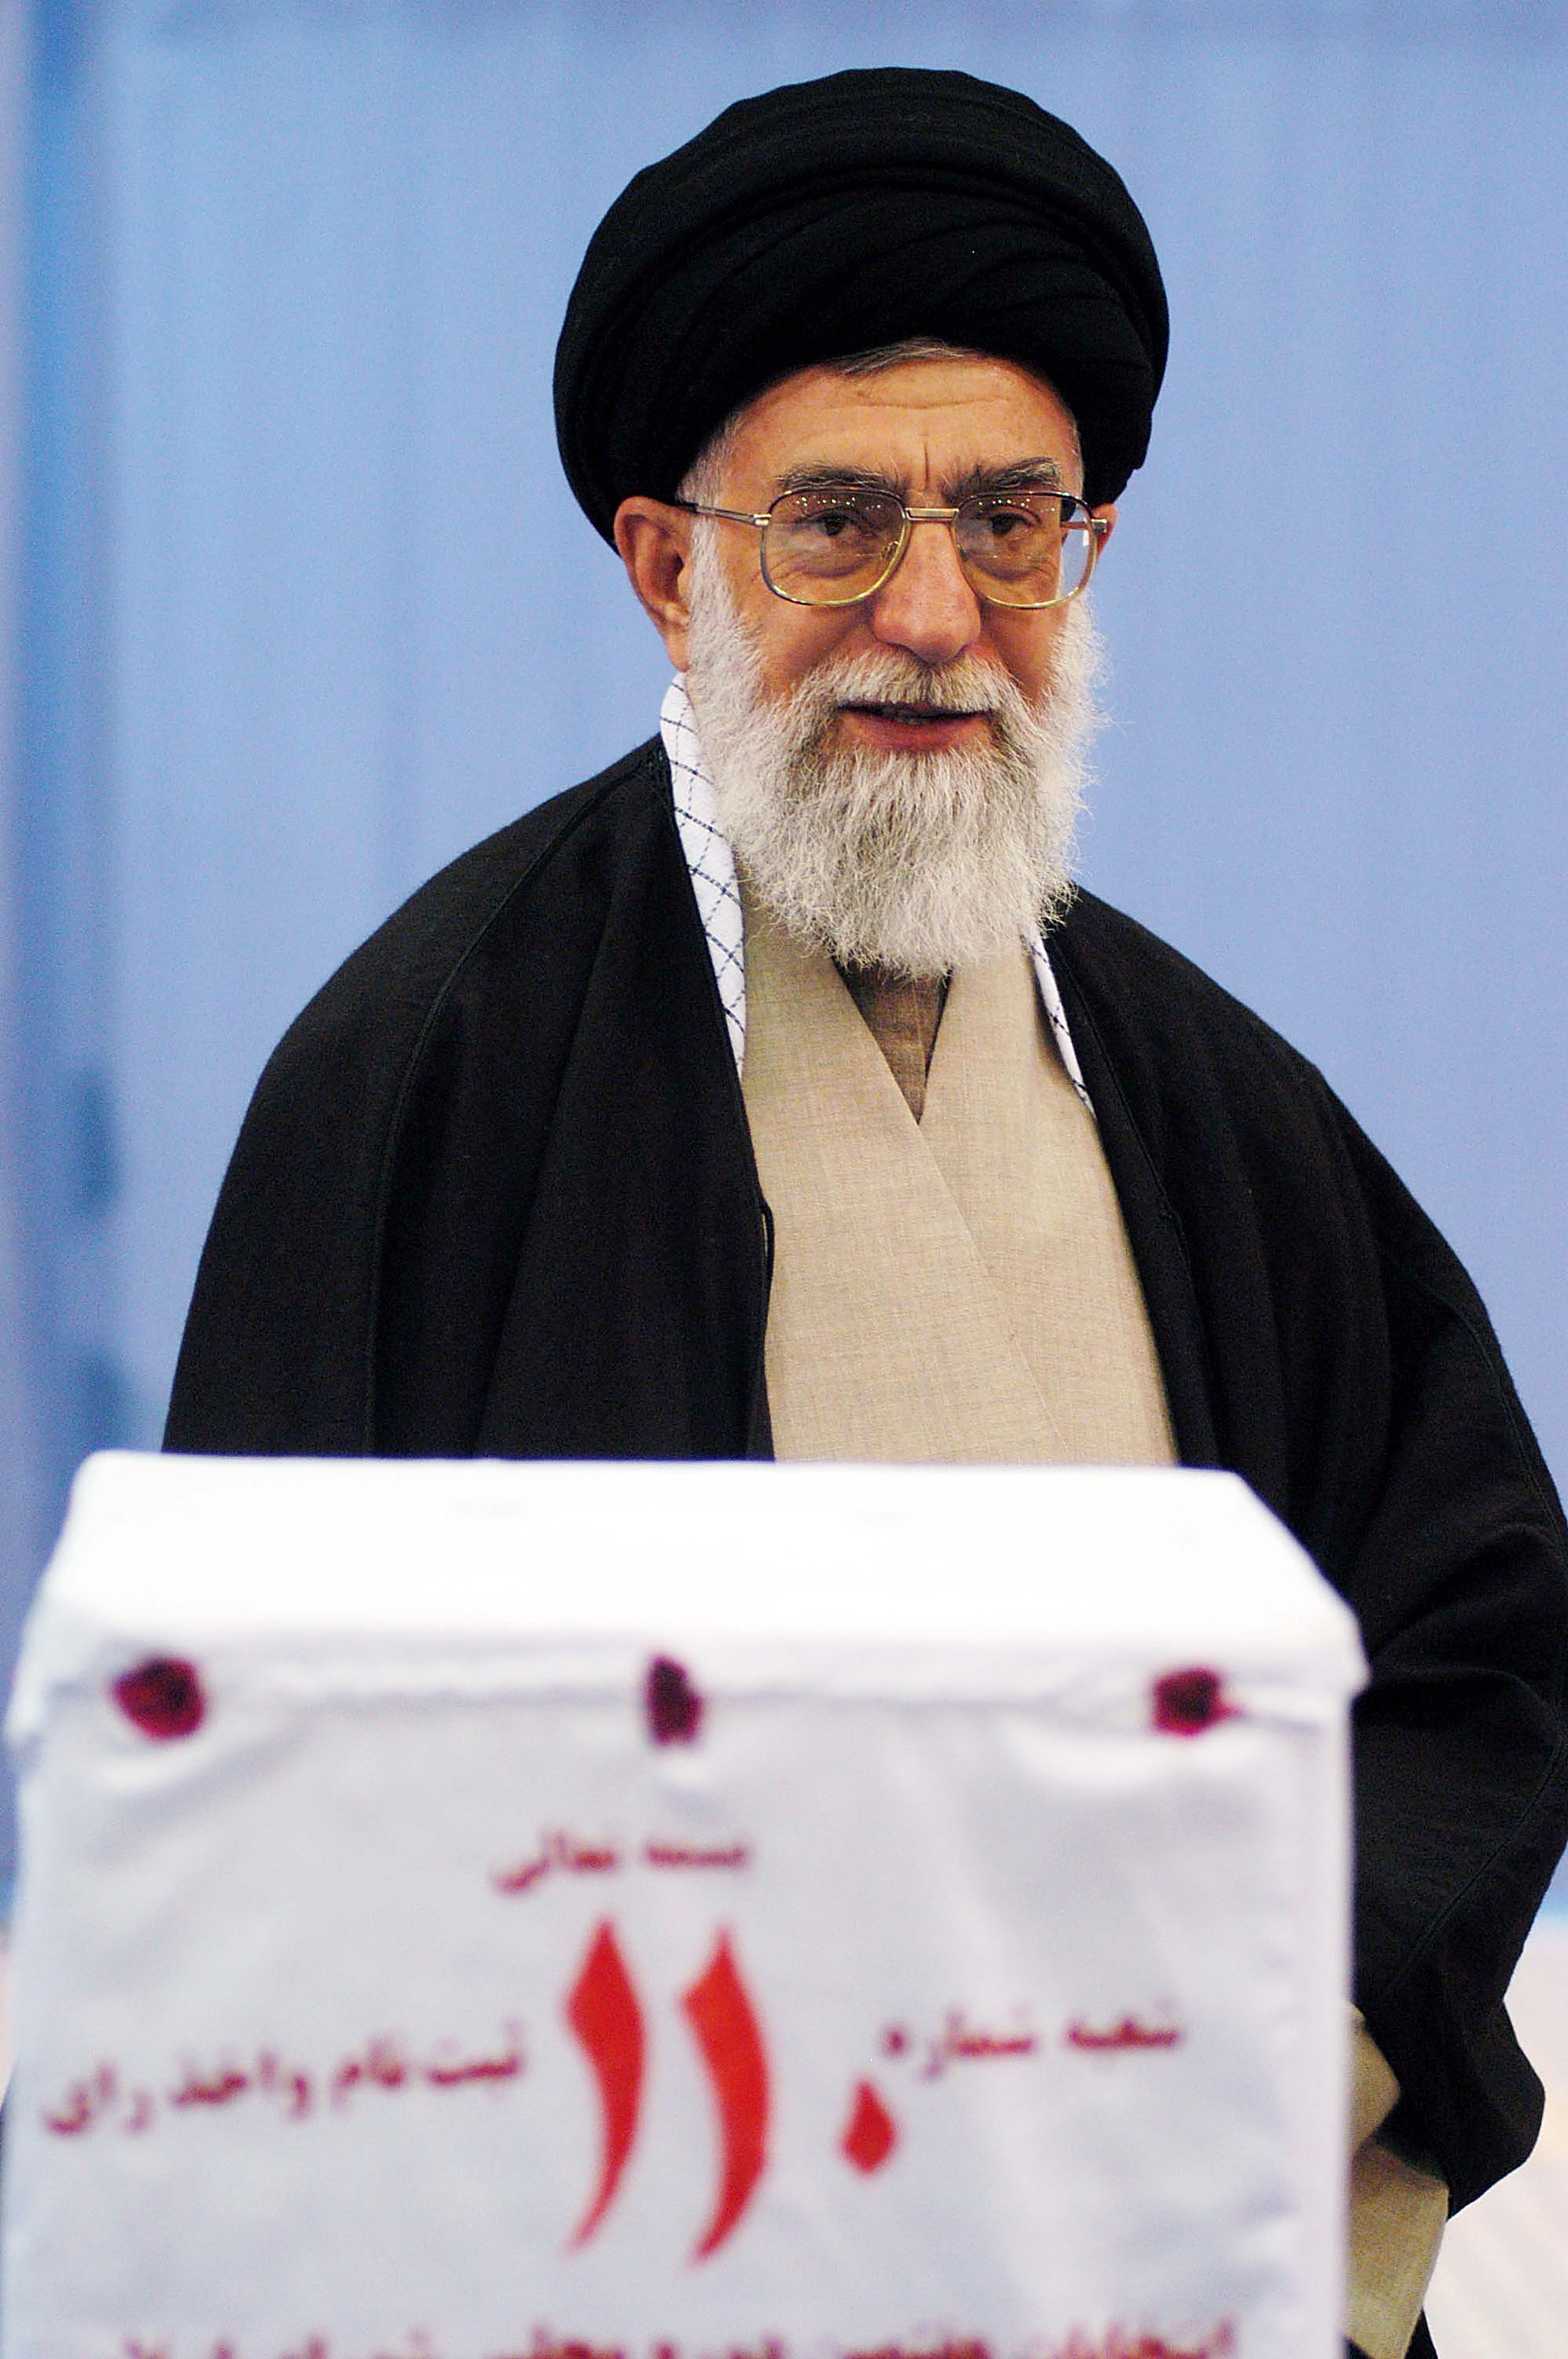 <p><strong>Иран</strong></p>

<p>Иранският върховен лидер аятолах Али Хаменей притежава изключителна власт над страната. Преди да заеме длъжността през 1989 г., той изпълнява функциите на президент - до голяма степен церемониална роля. 80-годишният Хаменей е считан за най-могъщата фигура на Иран.</p>